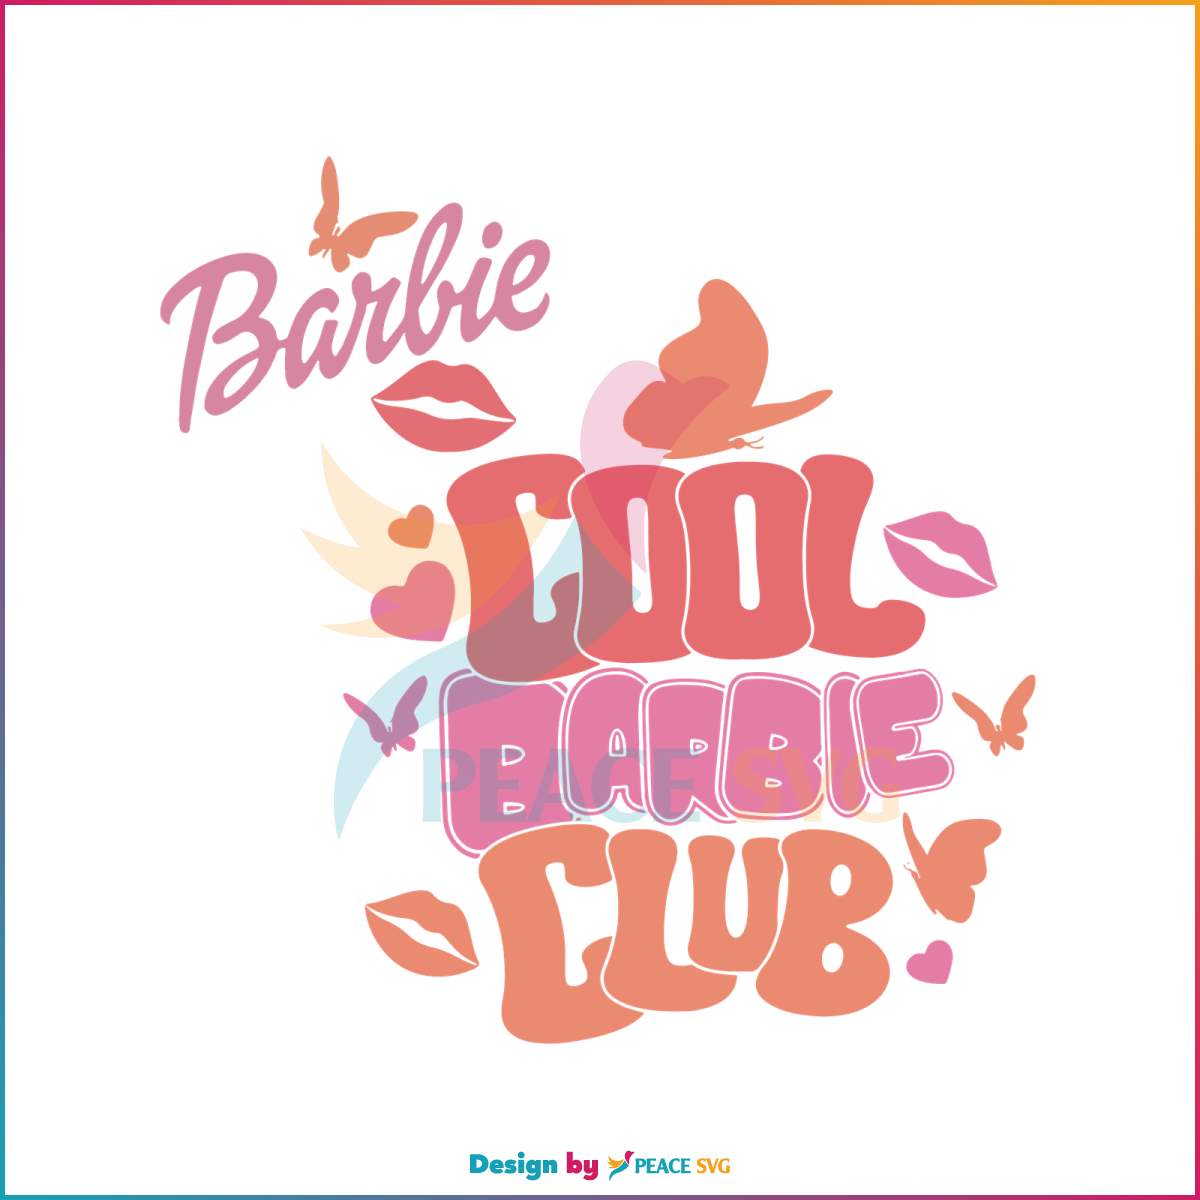 cool-barbie-club-svg-doll-baby-girl-svg-cutting-digital-file